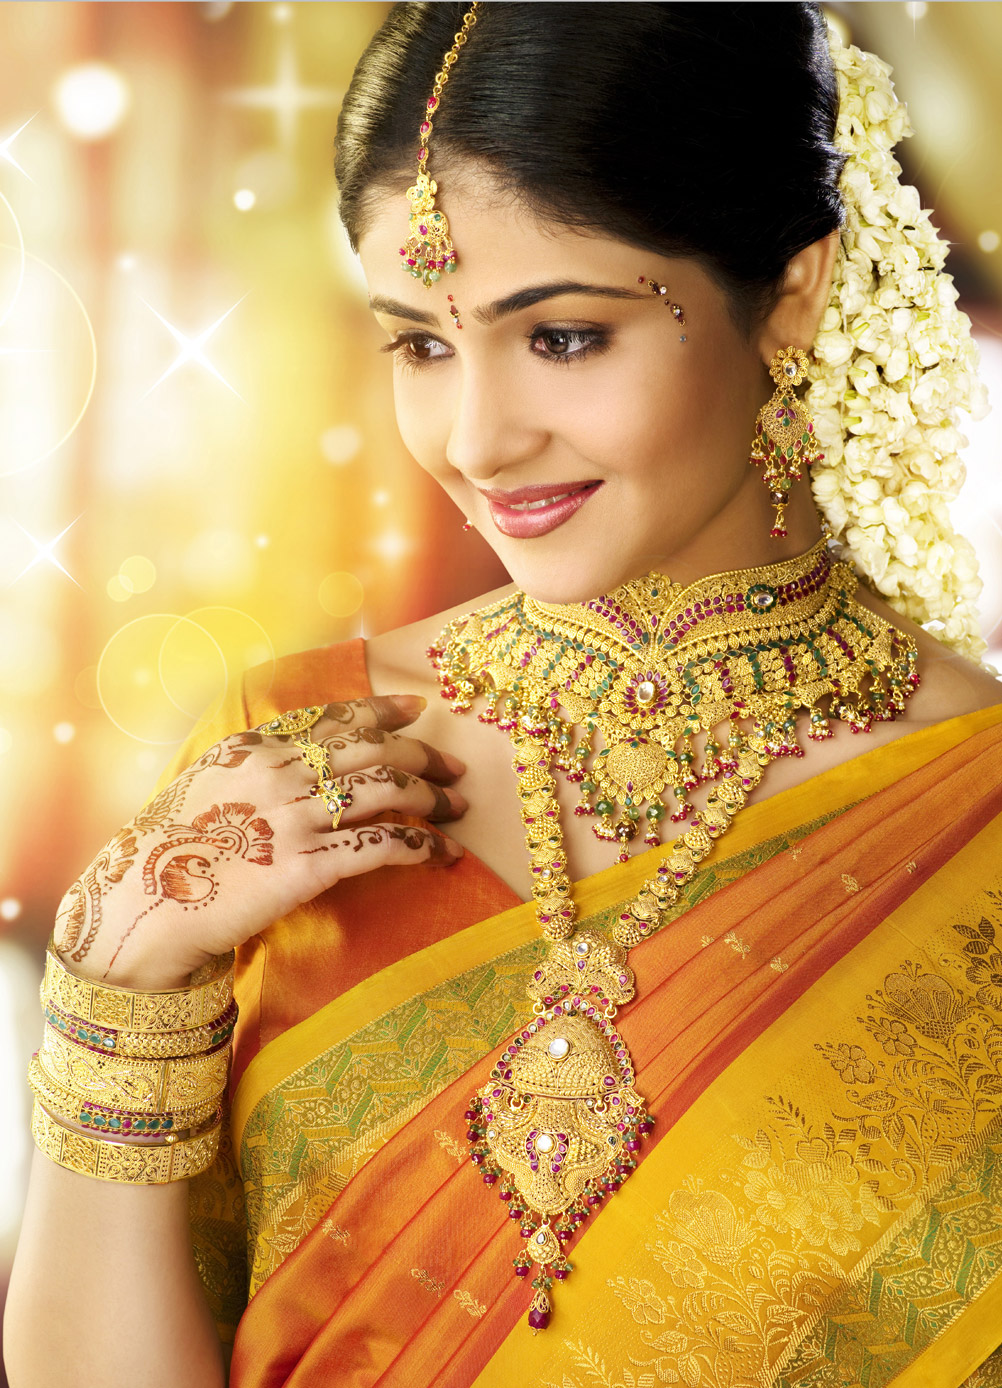 Gold wear. Болливуд толливуд. Индийское золото. Золото Индии. Девушка в индийском золотом костюме.